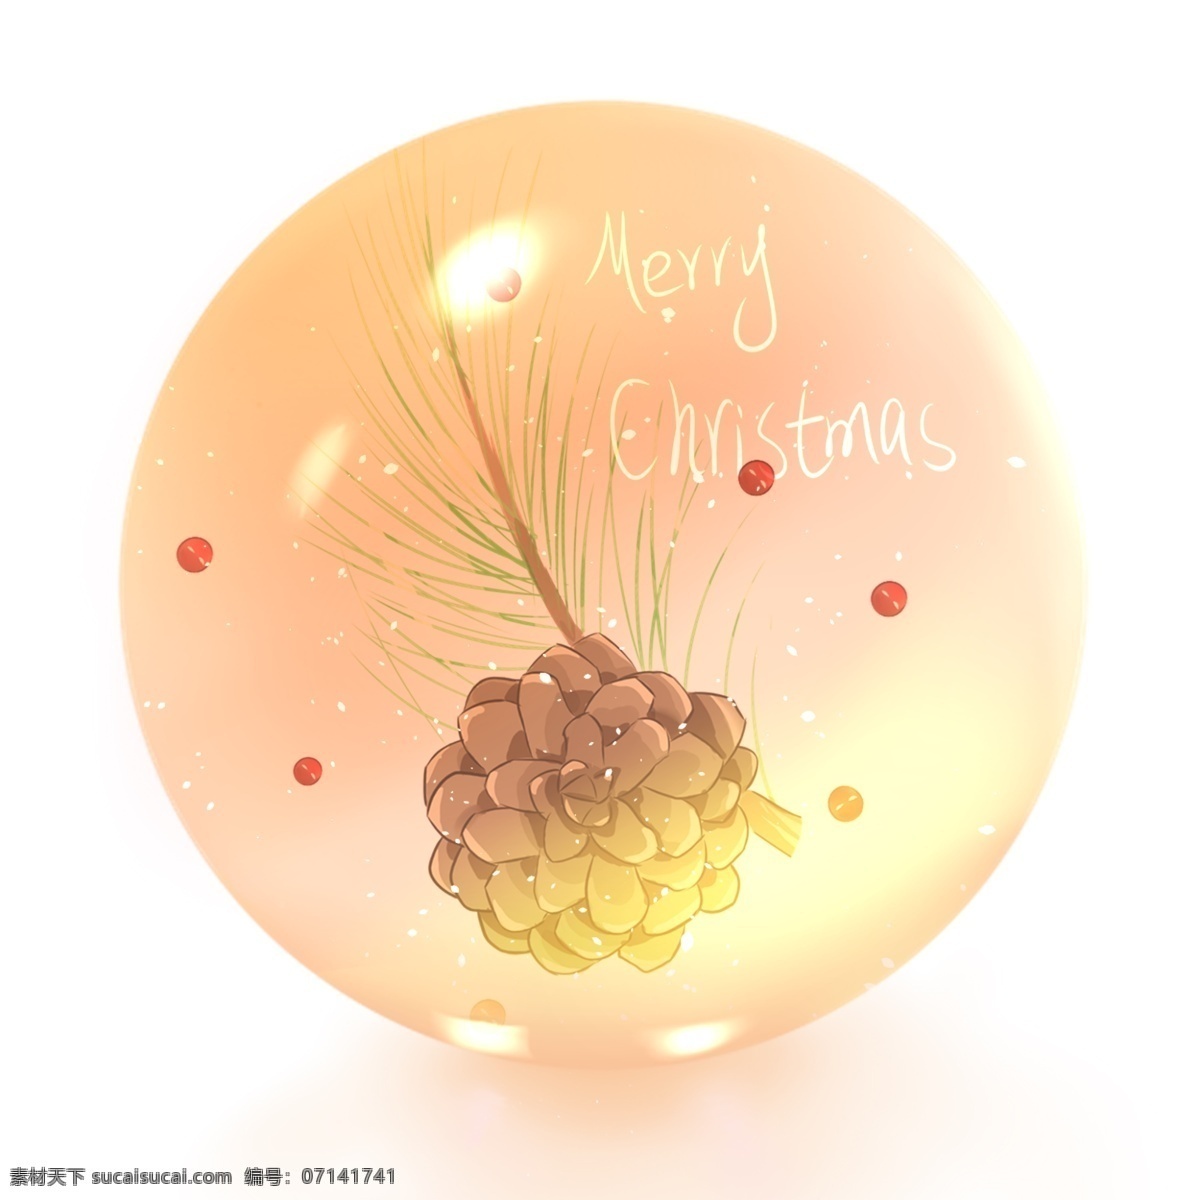 圣诞 水晶球 松子 冬青 果 圣诞节 圣诞夜 冬青果 礼物 手绘 卡通 可爱 圣诞快乐 雪花